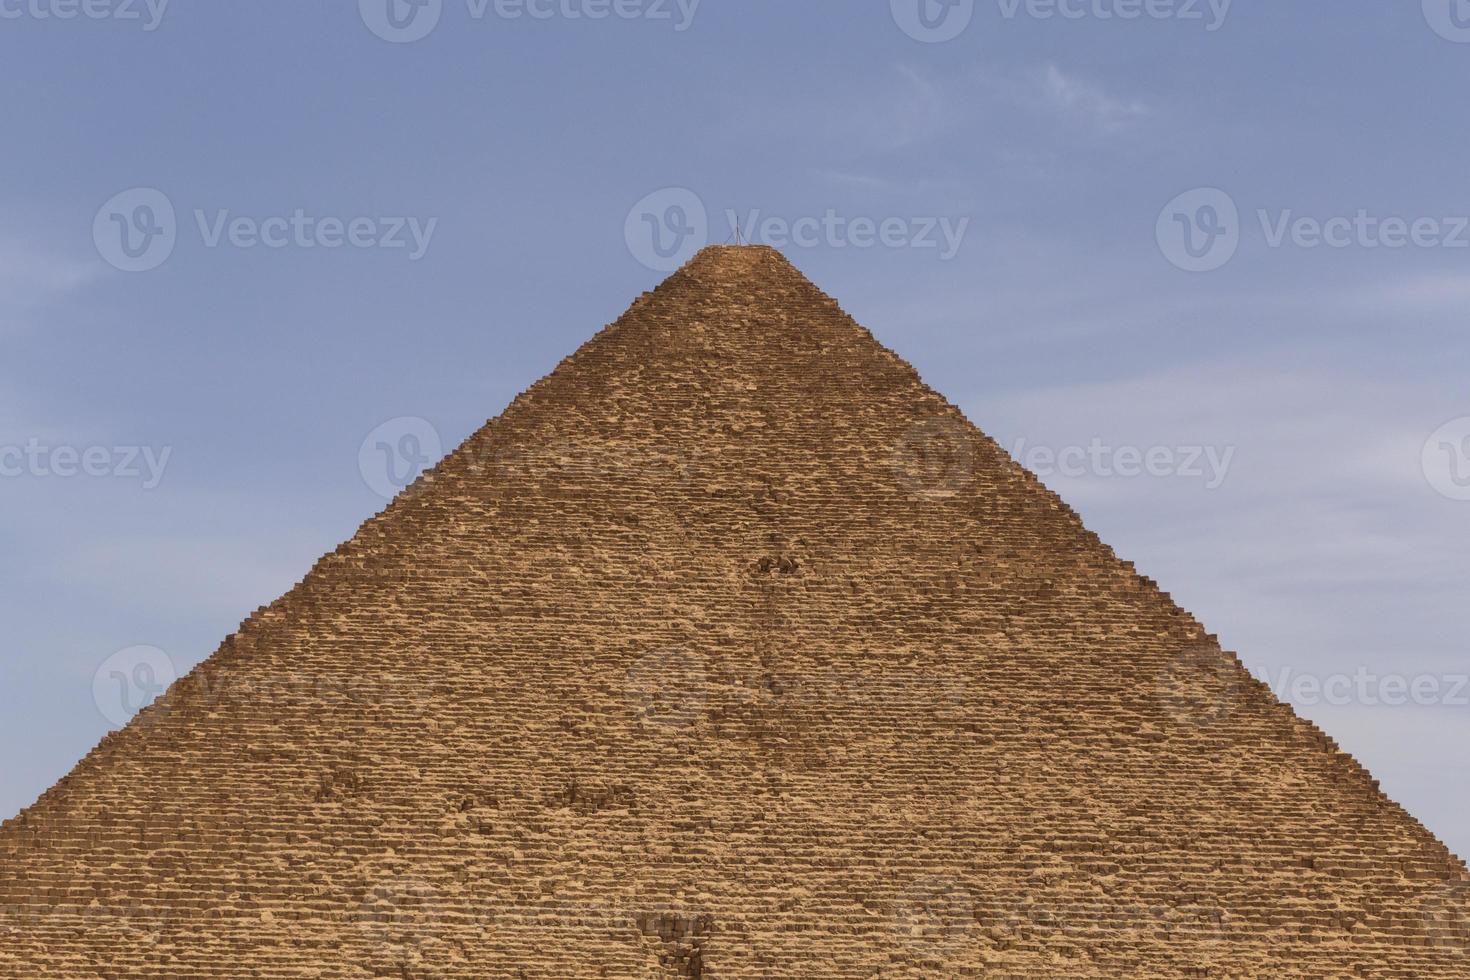 génial pyramide de gizeh contre bleu ciel photo